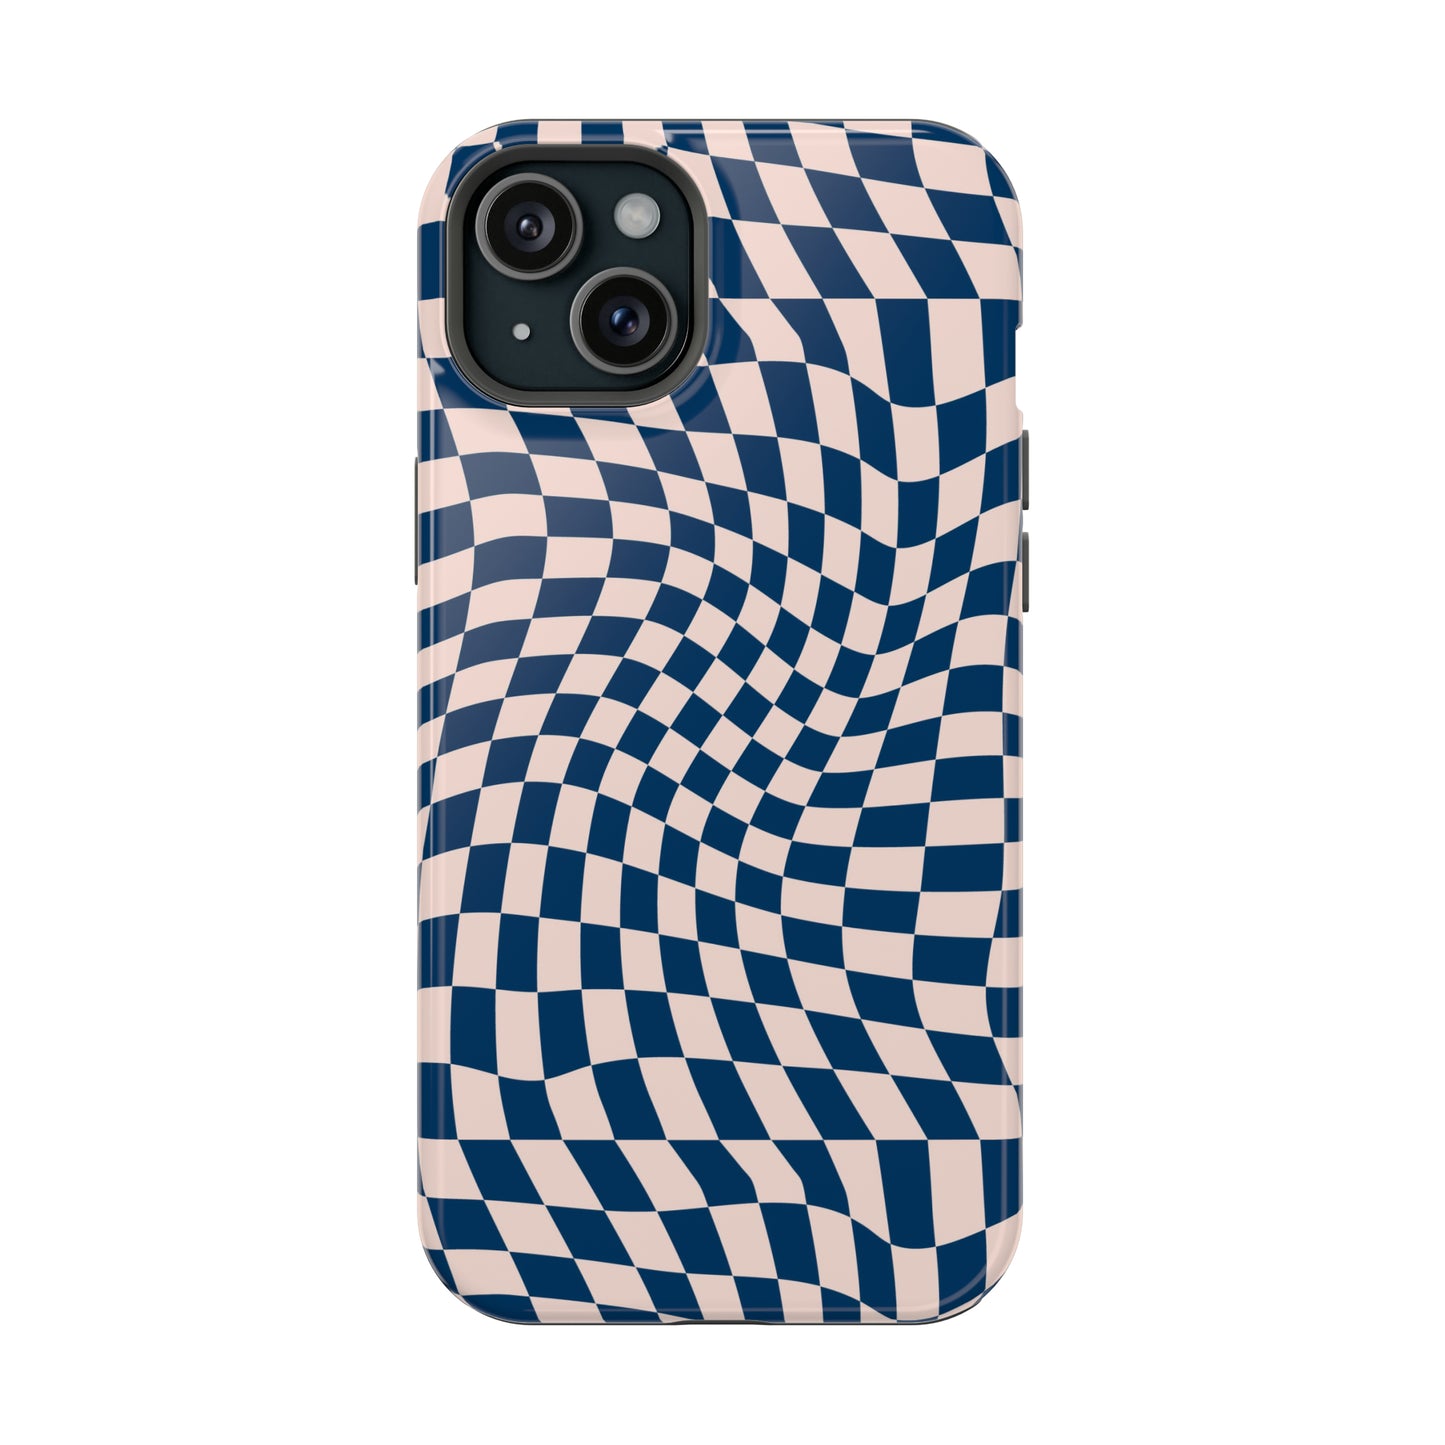 Wavy Blue Checkerboard Case